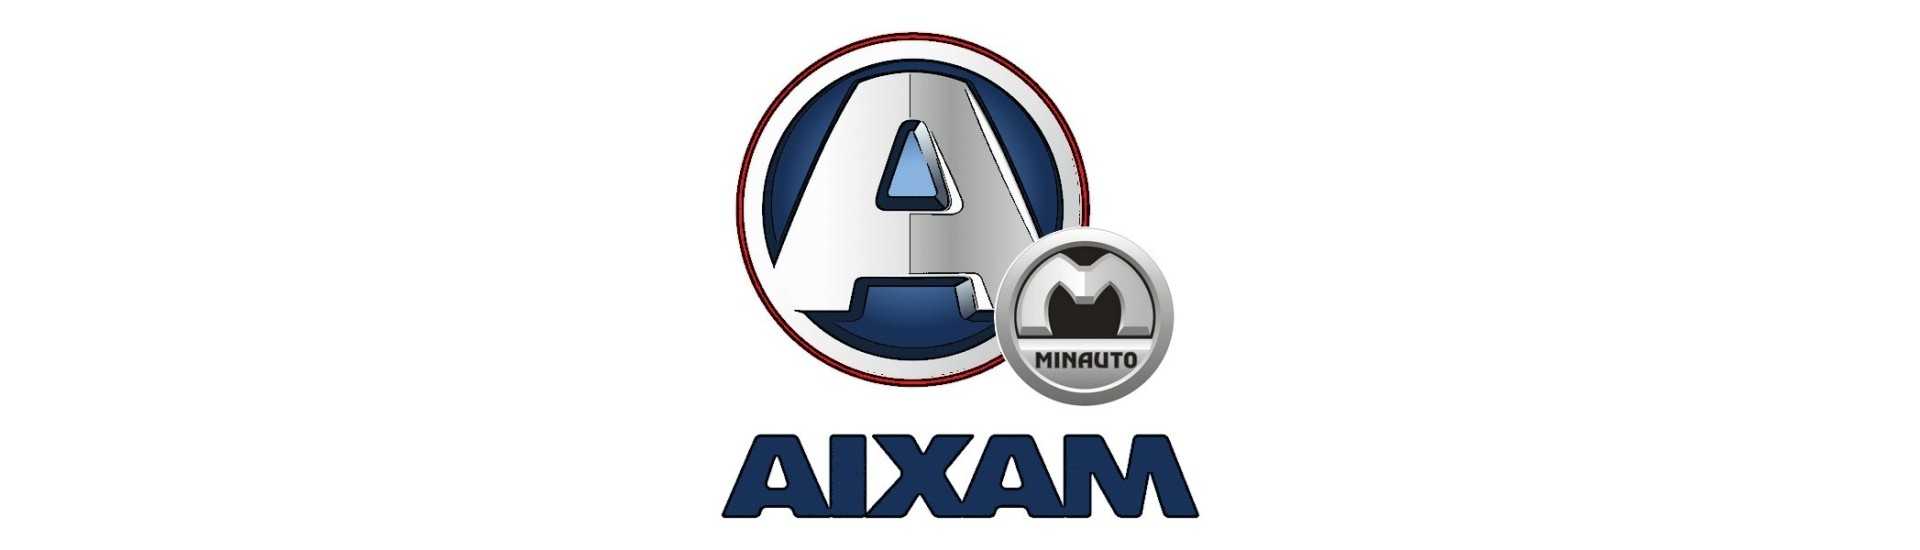 scarico flessibile ai migliori prezzi dell'auto senza permesso Aixam Minauto